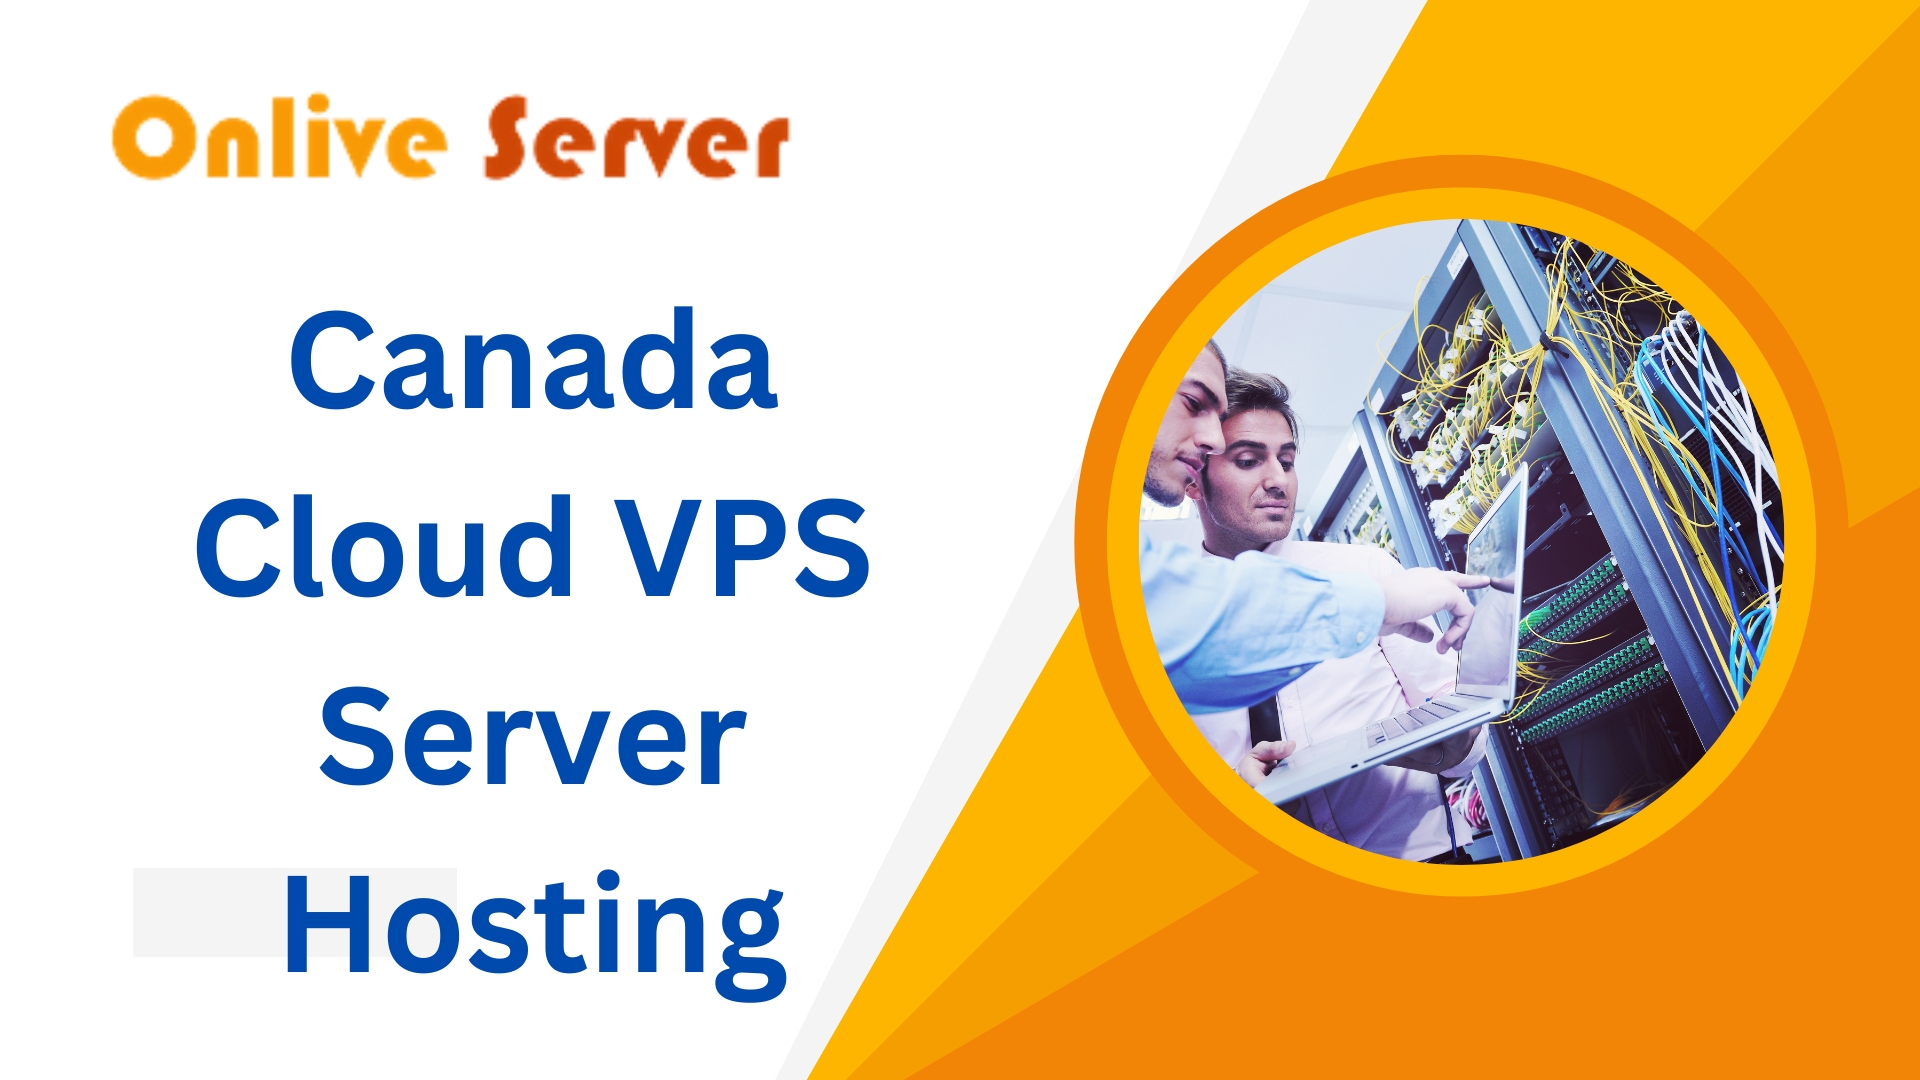 Canada Cloud VPS Server Hosting